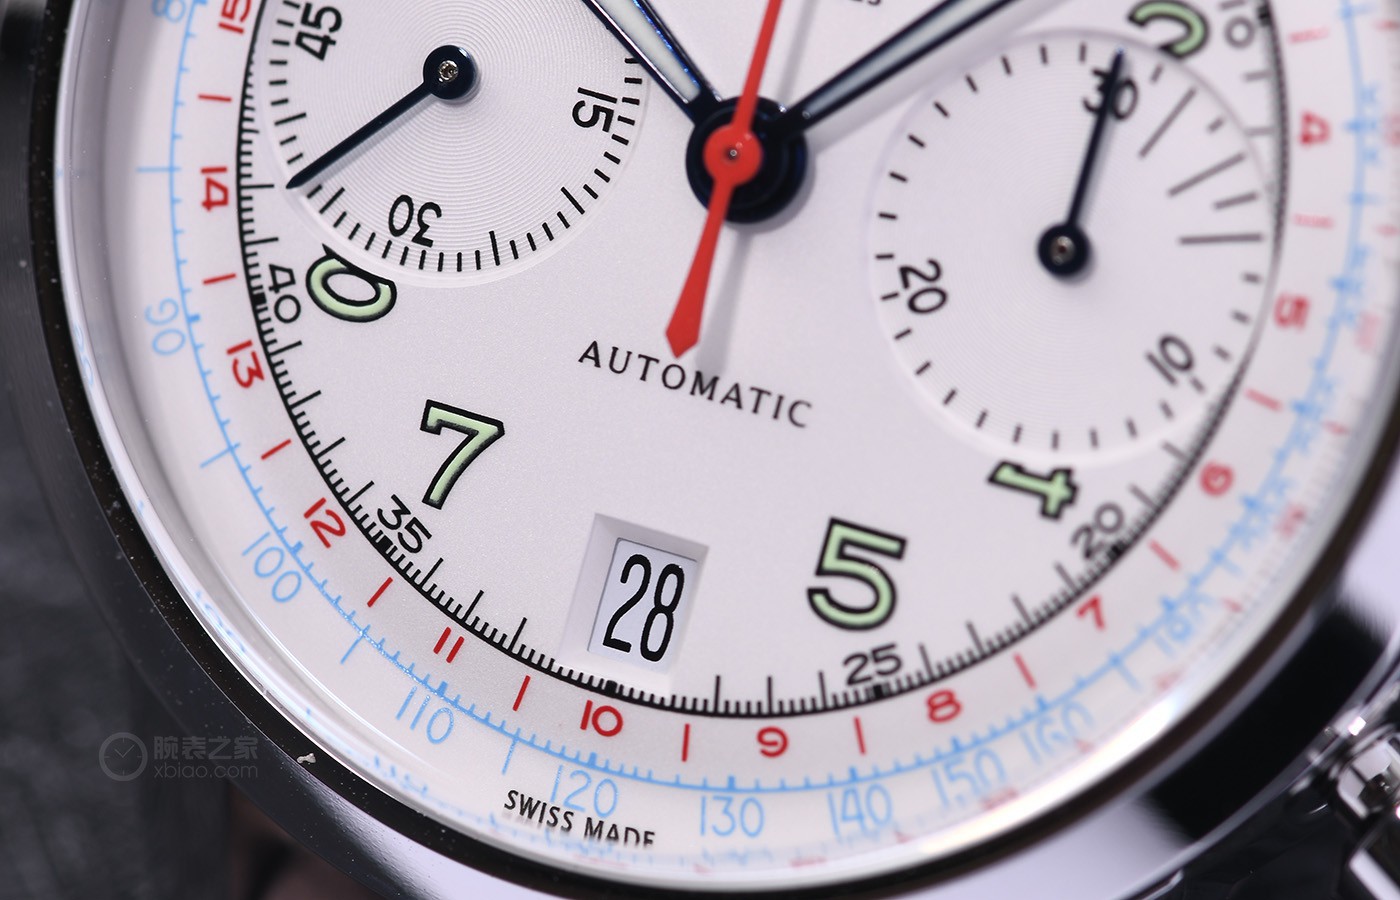 来自1950年的经典，品鉴梅花传承系列1950年代原创手表复刻版腕表